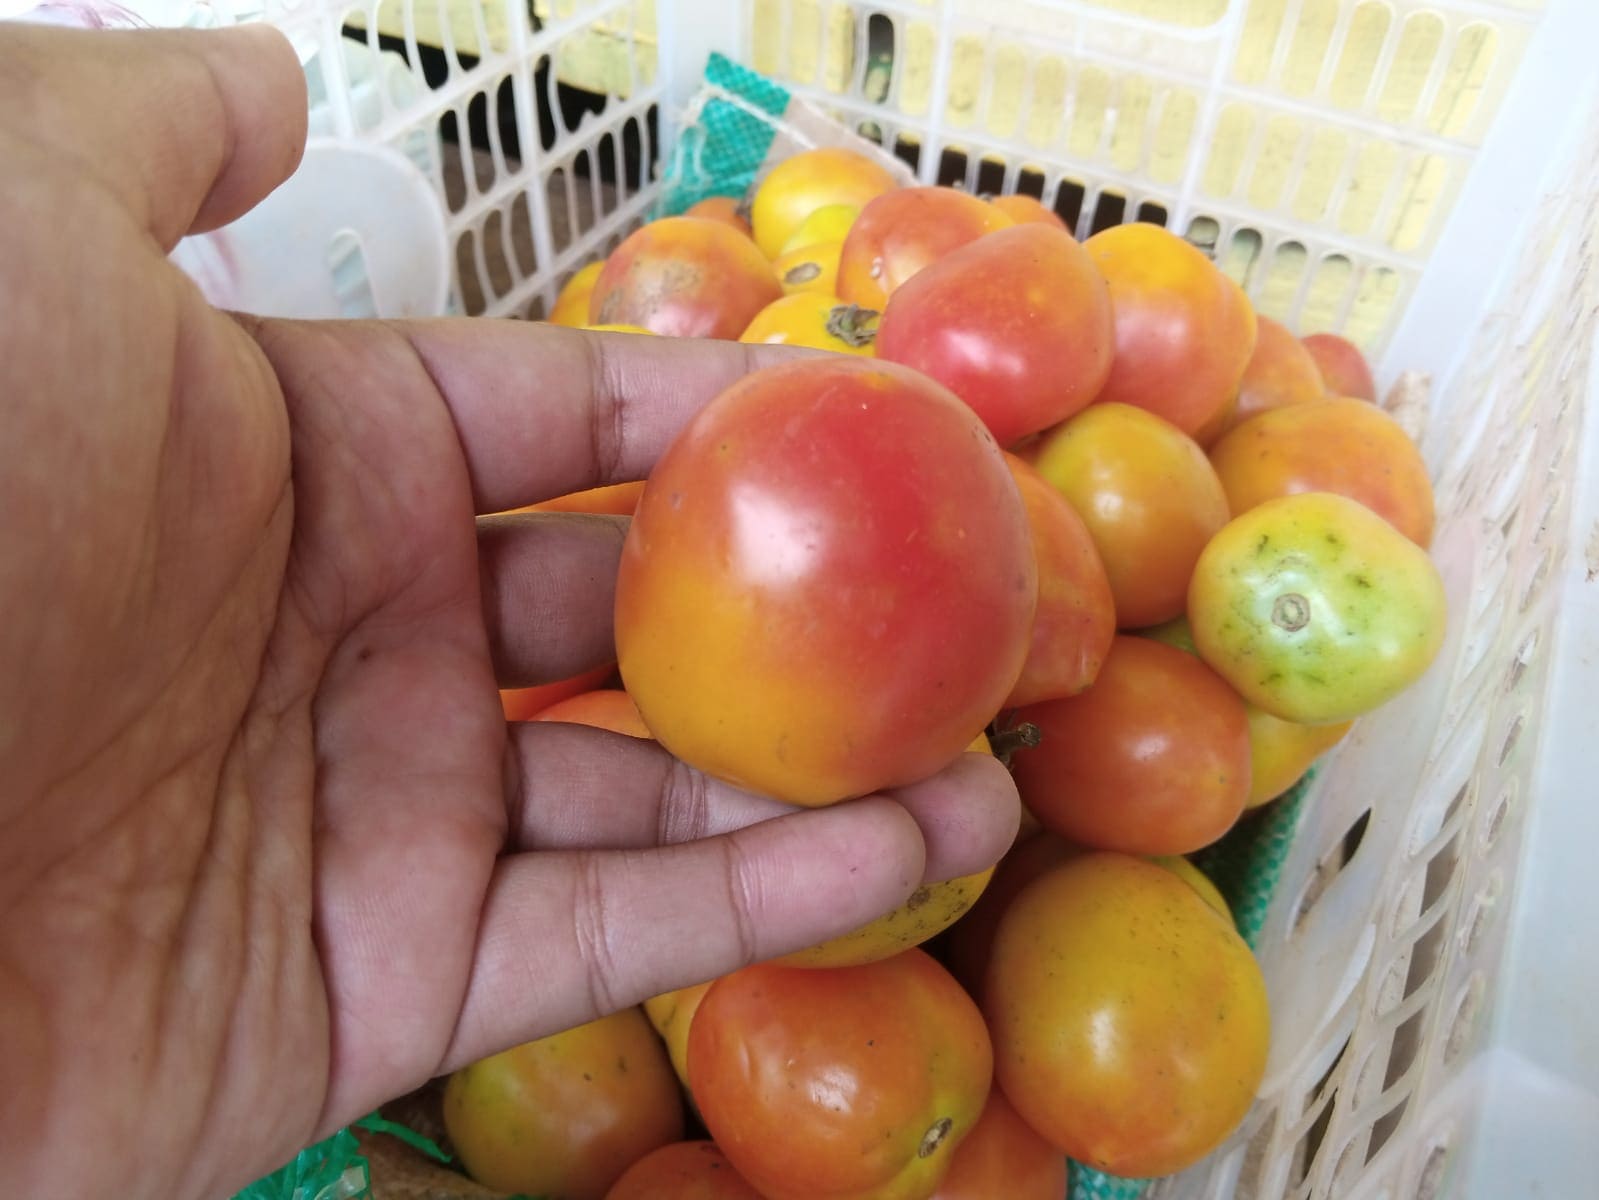 Harga tomat di Pasar Baru Tuban.(Foto: Mochamad Abdurrochim/Tugu Jatim)